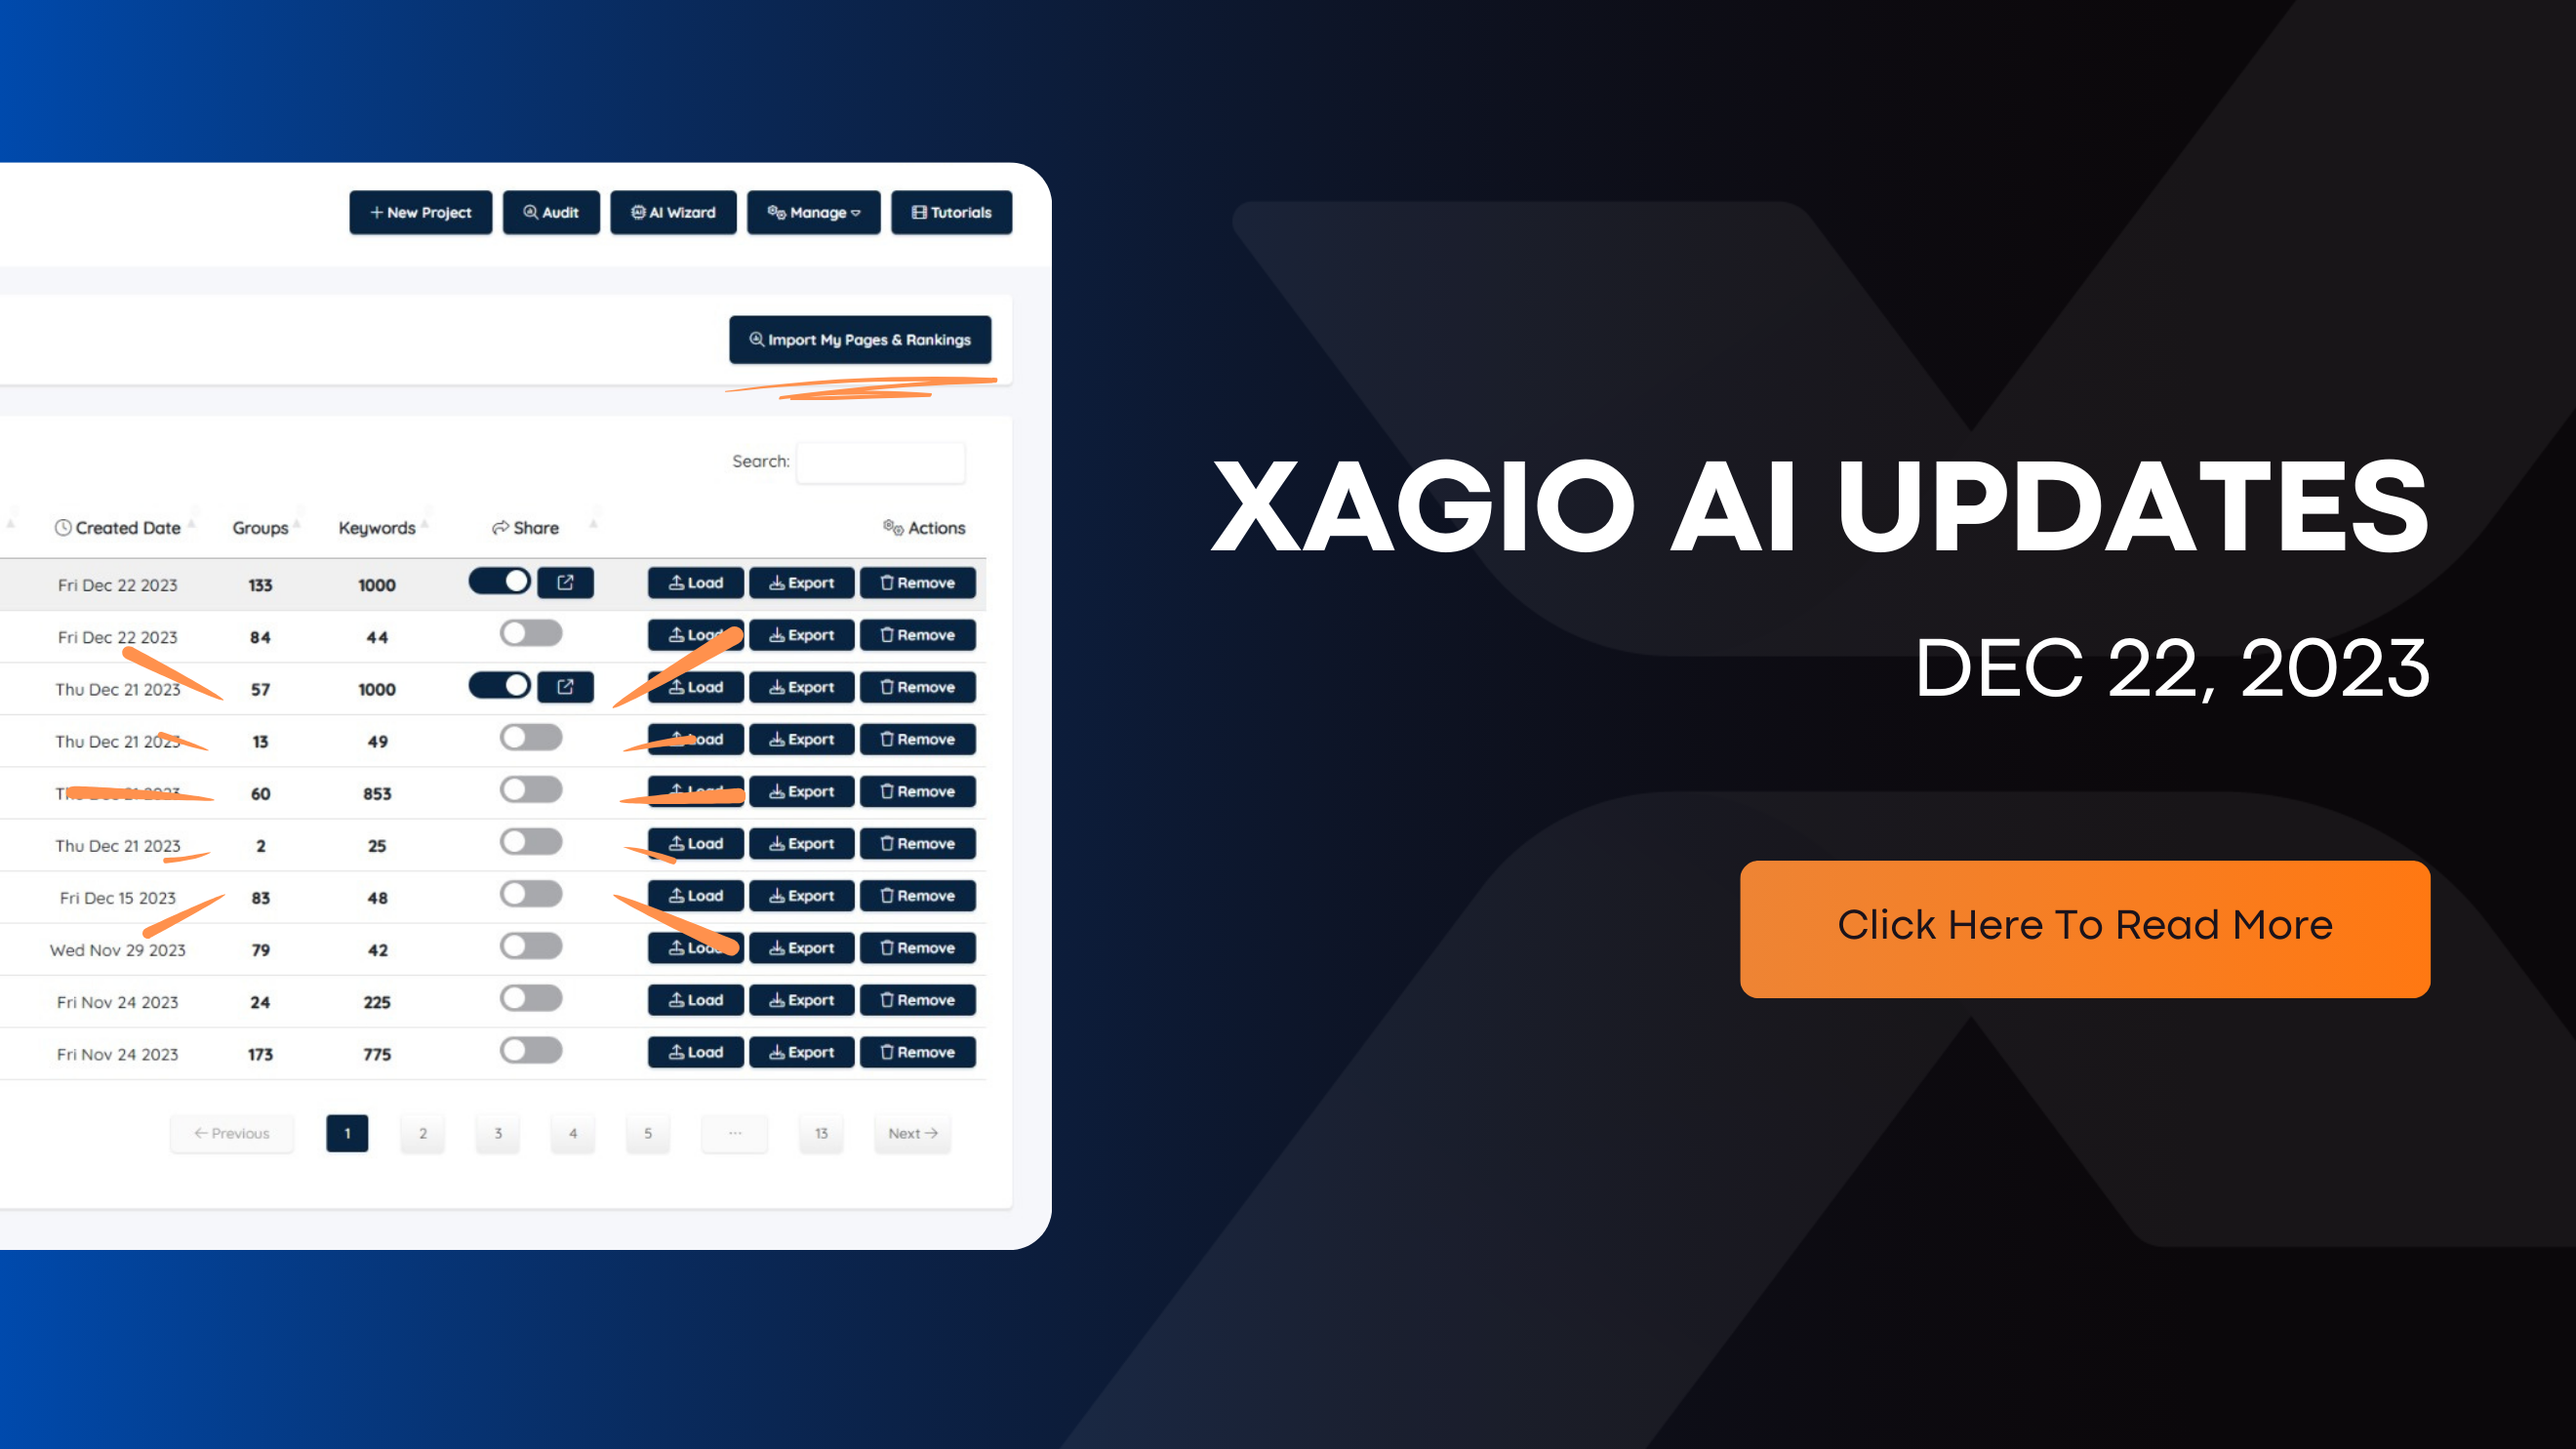 Xagio AI Updates, Dec 22, 2023